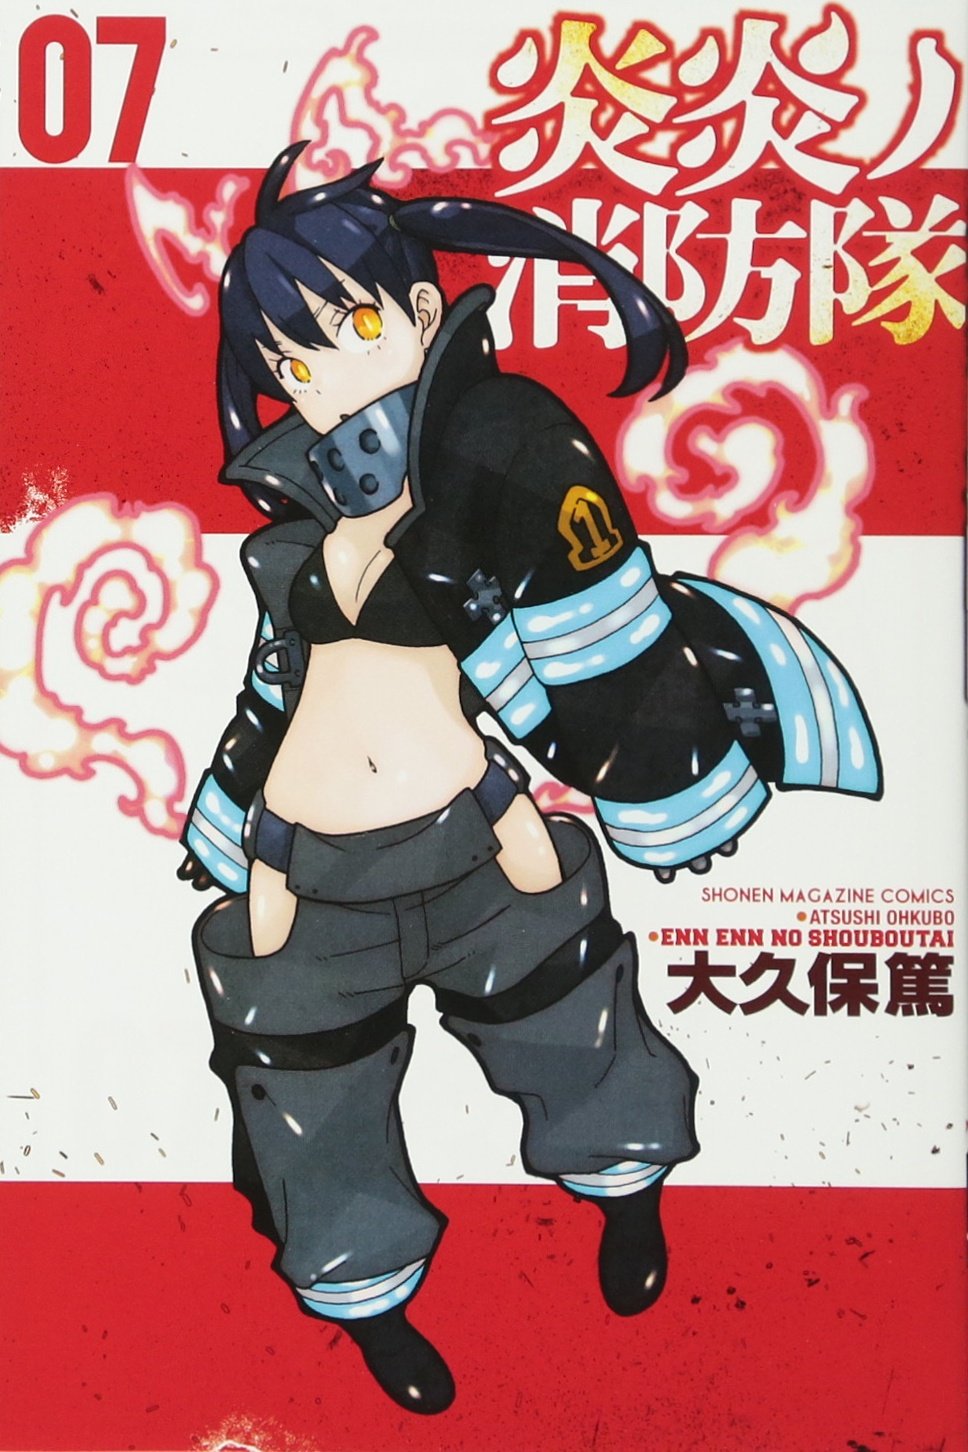 Fire Force Volume 10 (Enen no Shouboutai) - Manga Store 